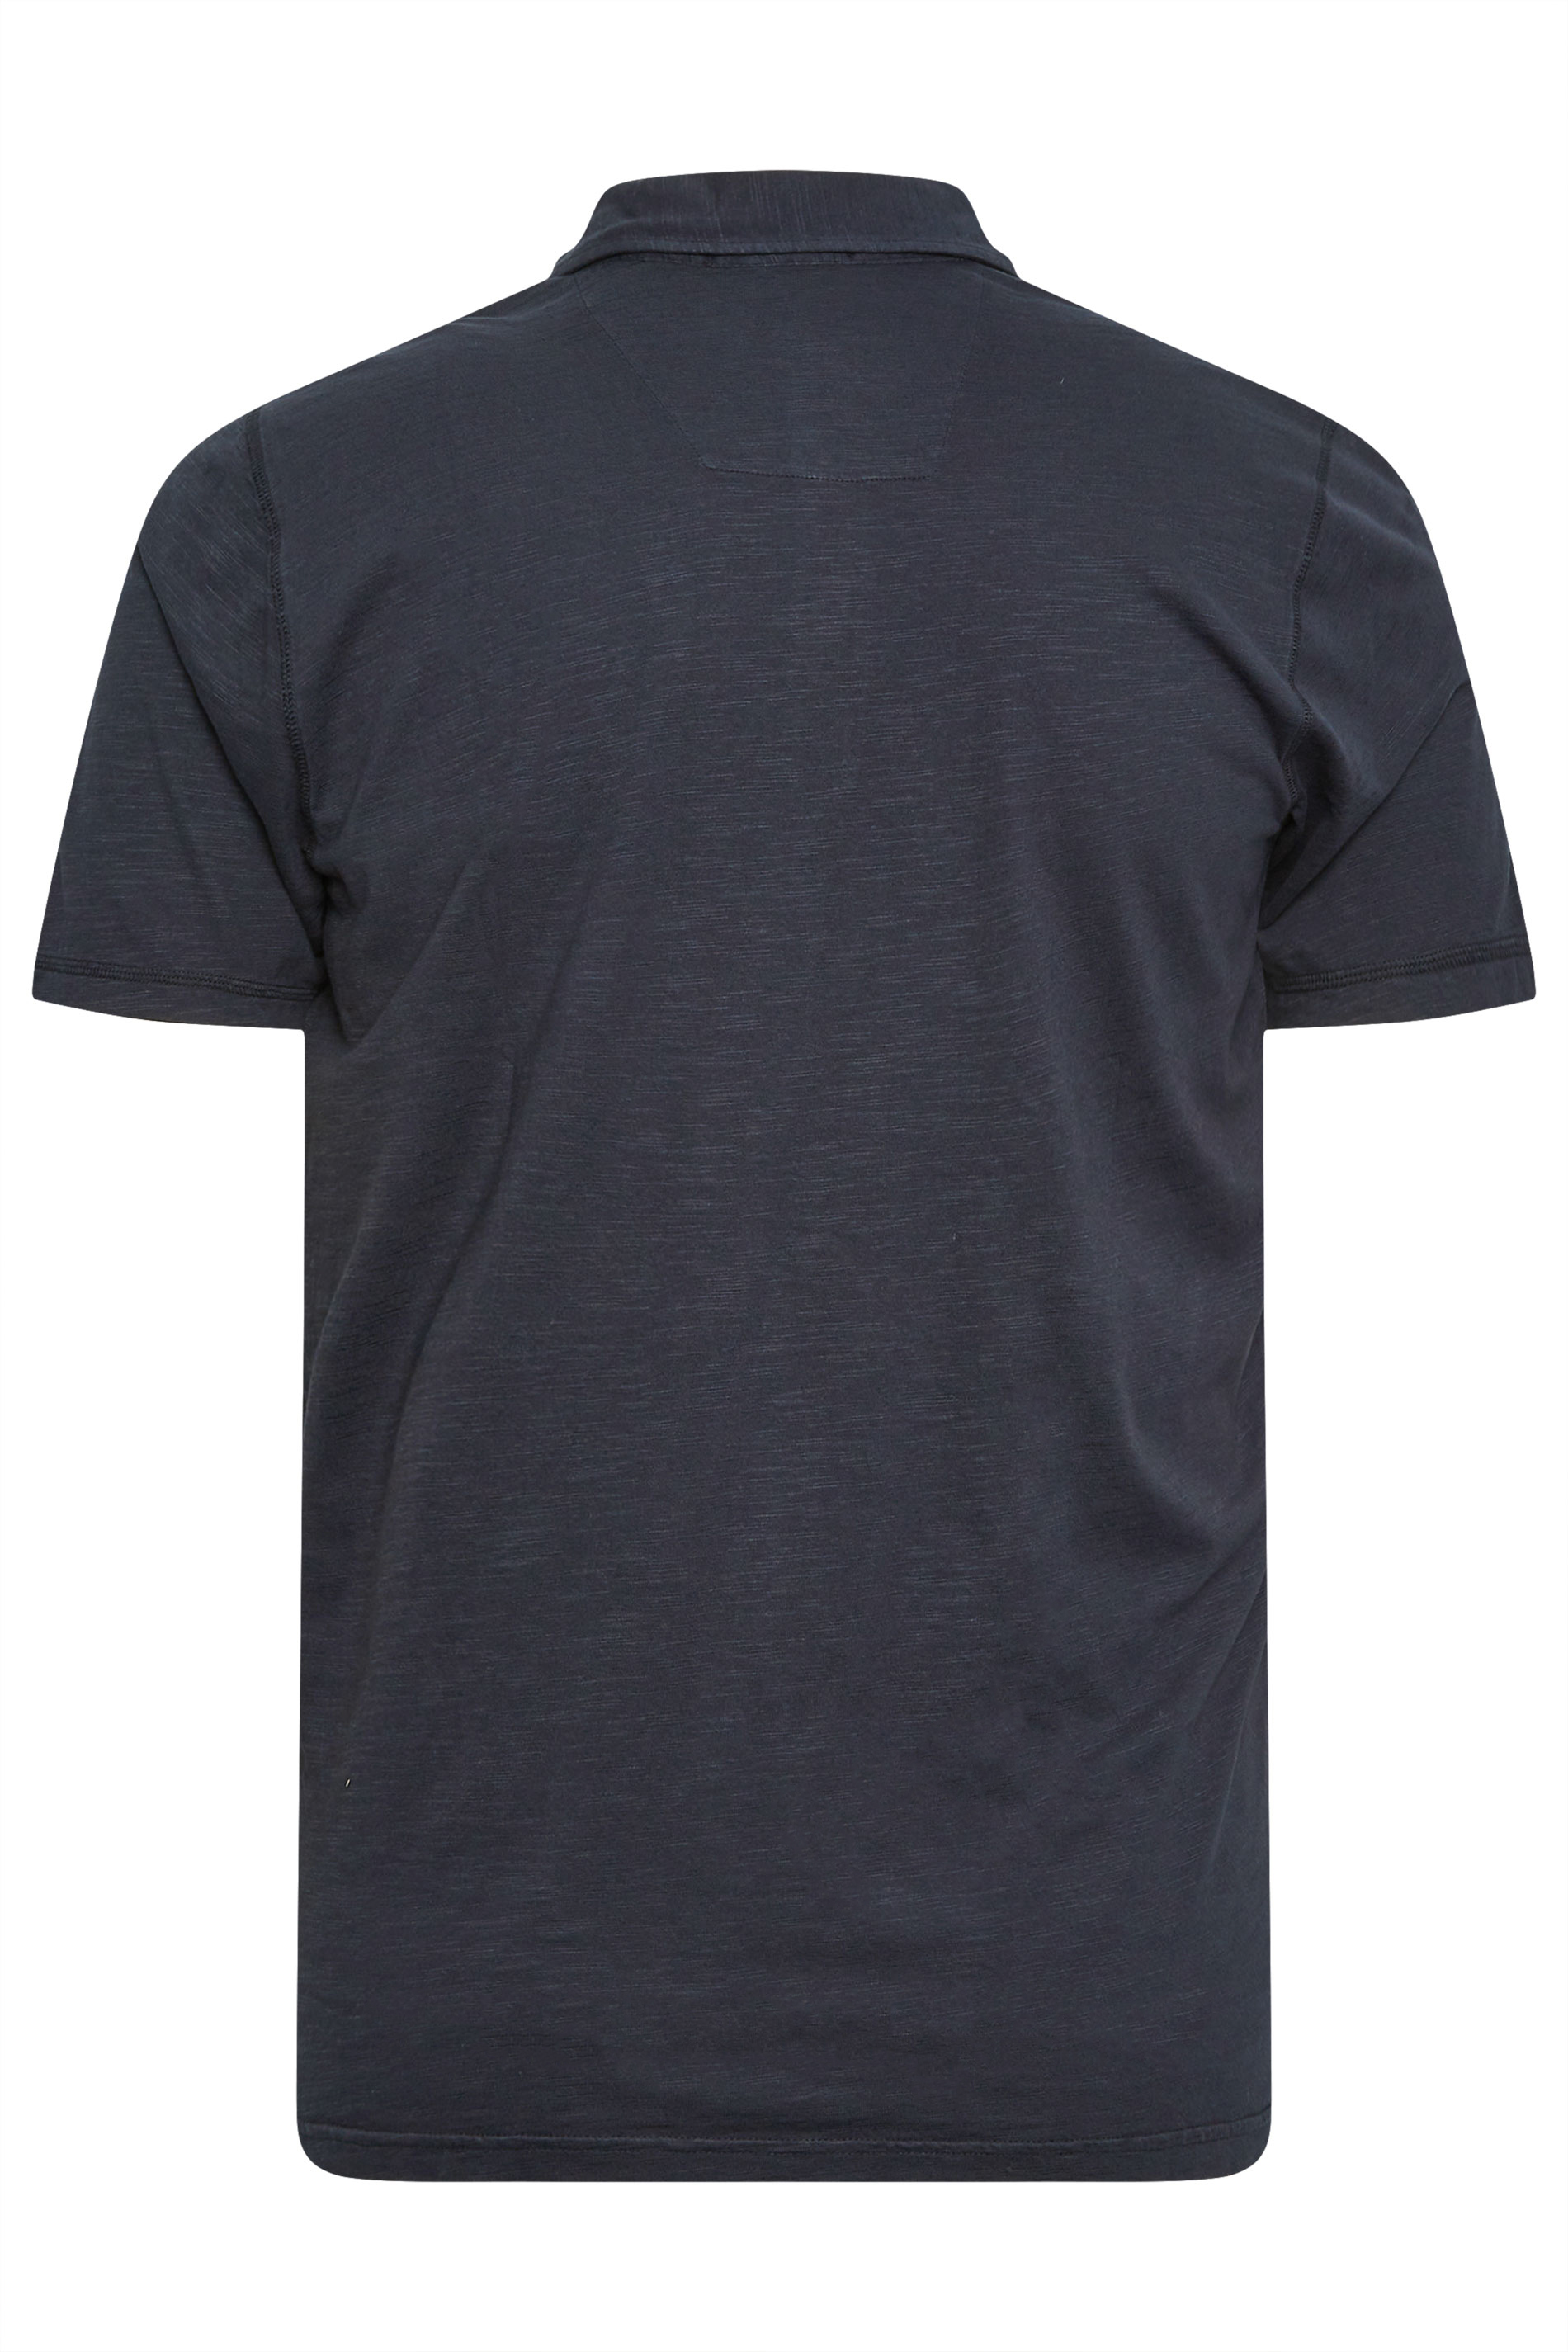 BadRhino Navy Blue Slub Polo Shirt | BadRhino 3